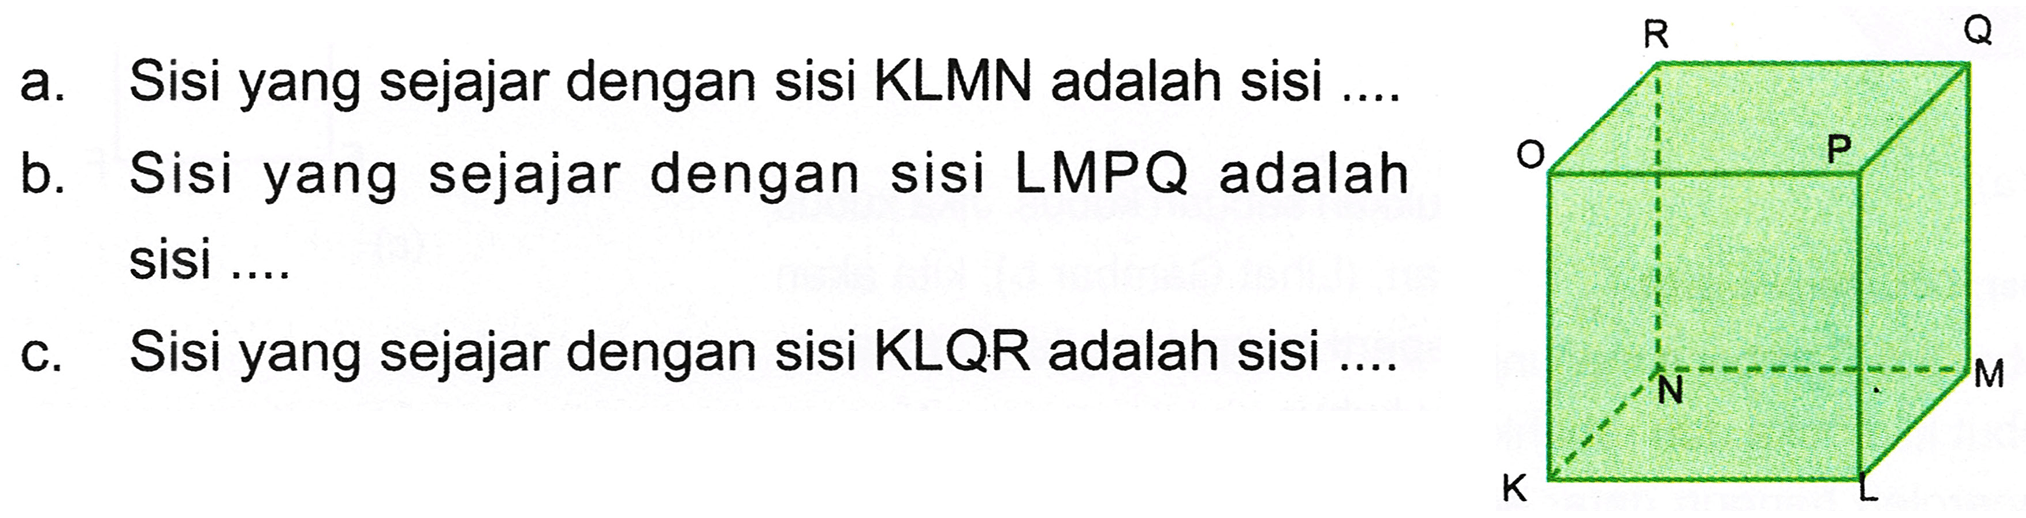 a. Sisi yang sejajar dengan sisi KLMN adalah sisi ....
b. Sisi yang sejajar dengan sisi LMPQ adalah sisi ....
c. Sisi yang sejajar dengan sisi KLQR adalah sisi ....